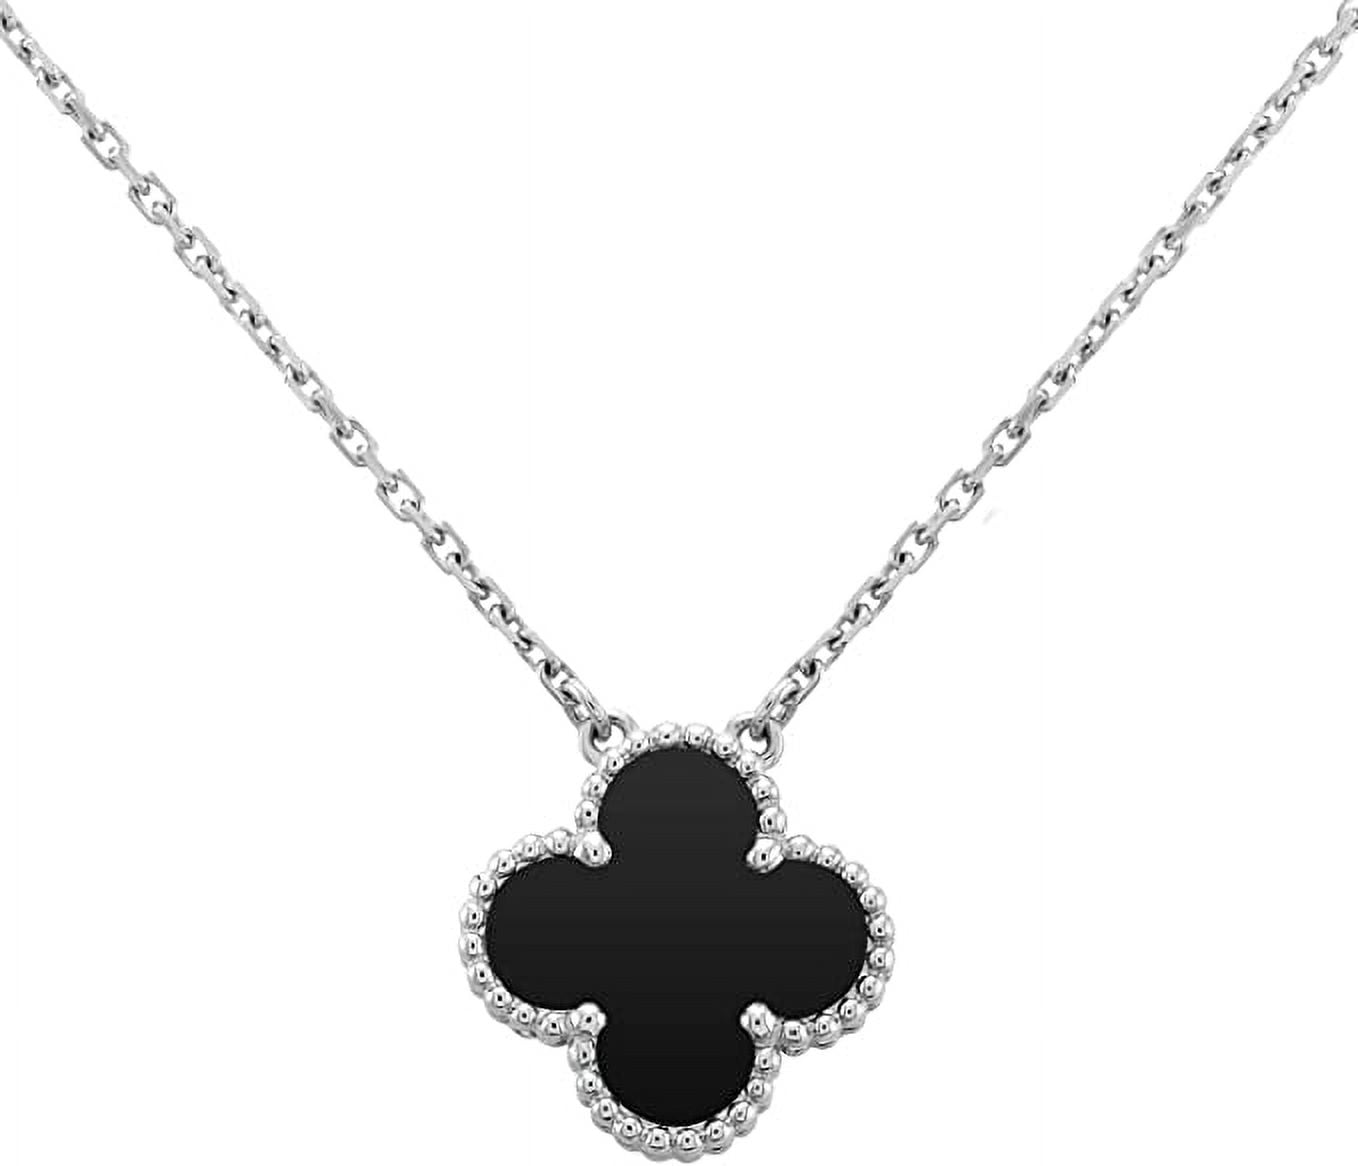 Cité Dorée - Black Van Cleef Style Long Necklace - 38 inches